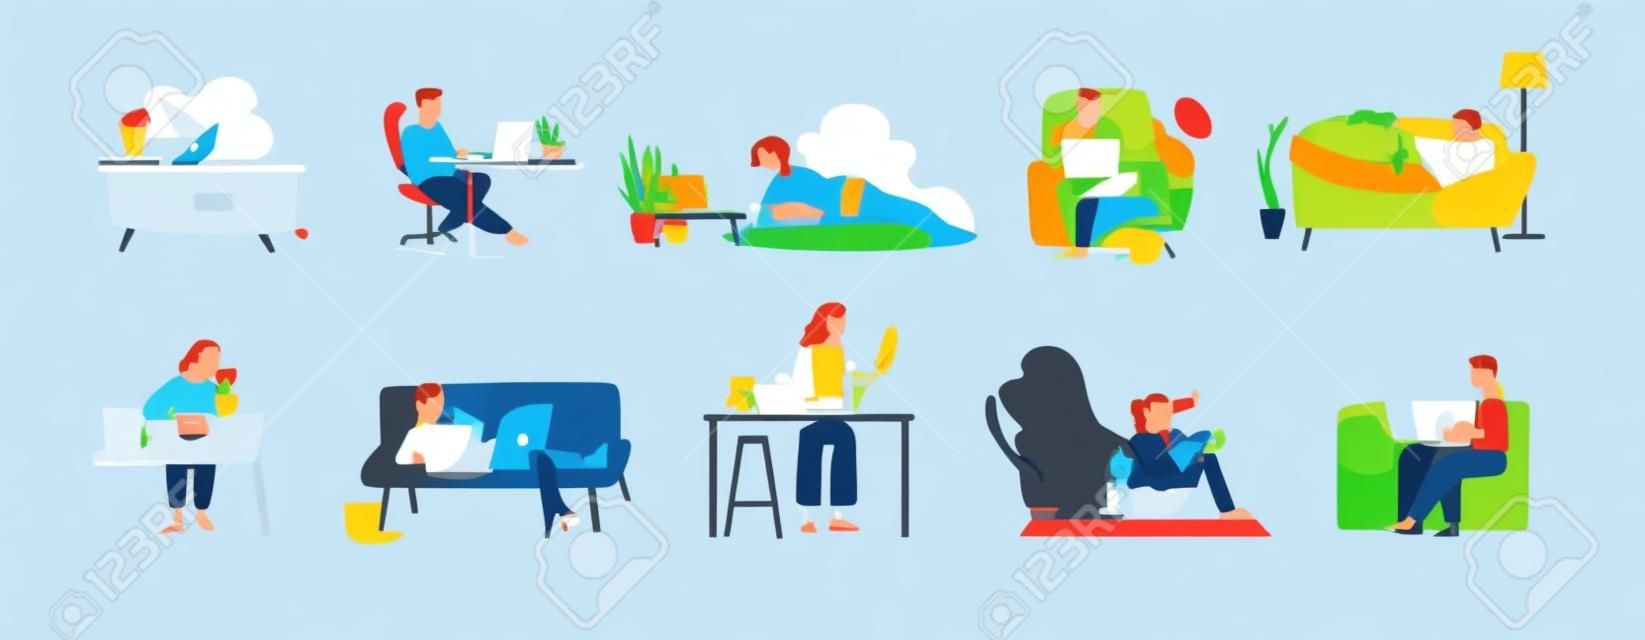 Kolekcja ludzi surfujących po Internecie na laptopach i tabletach. Zestaw mężczyzn i kobiet spędzających czas w Internecie na białym tle. Kolorowa ilustracja wektorowa w stylu płaskiej kreskówki